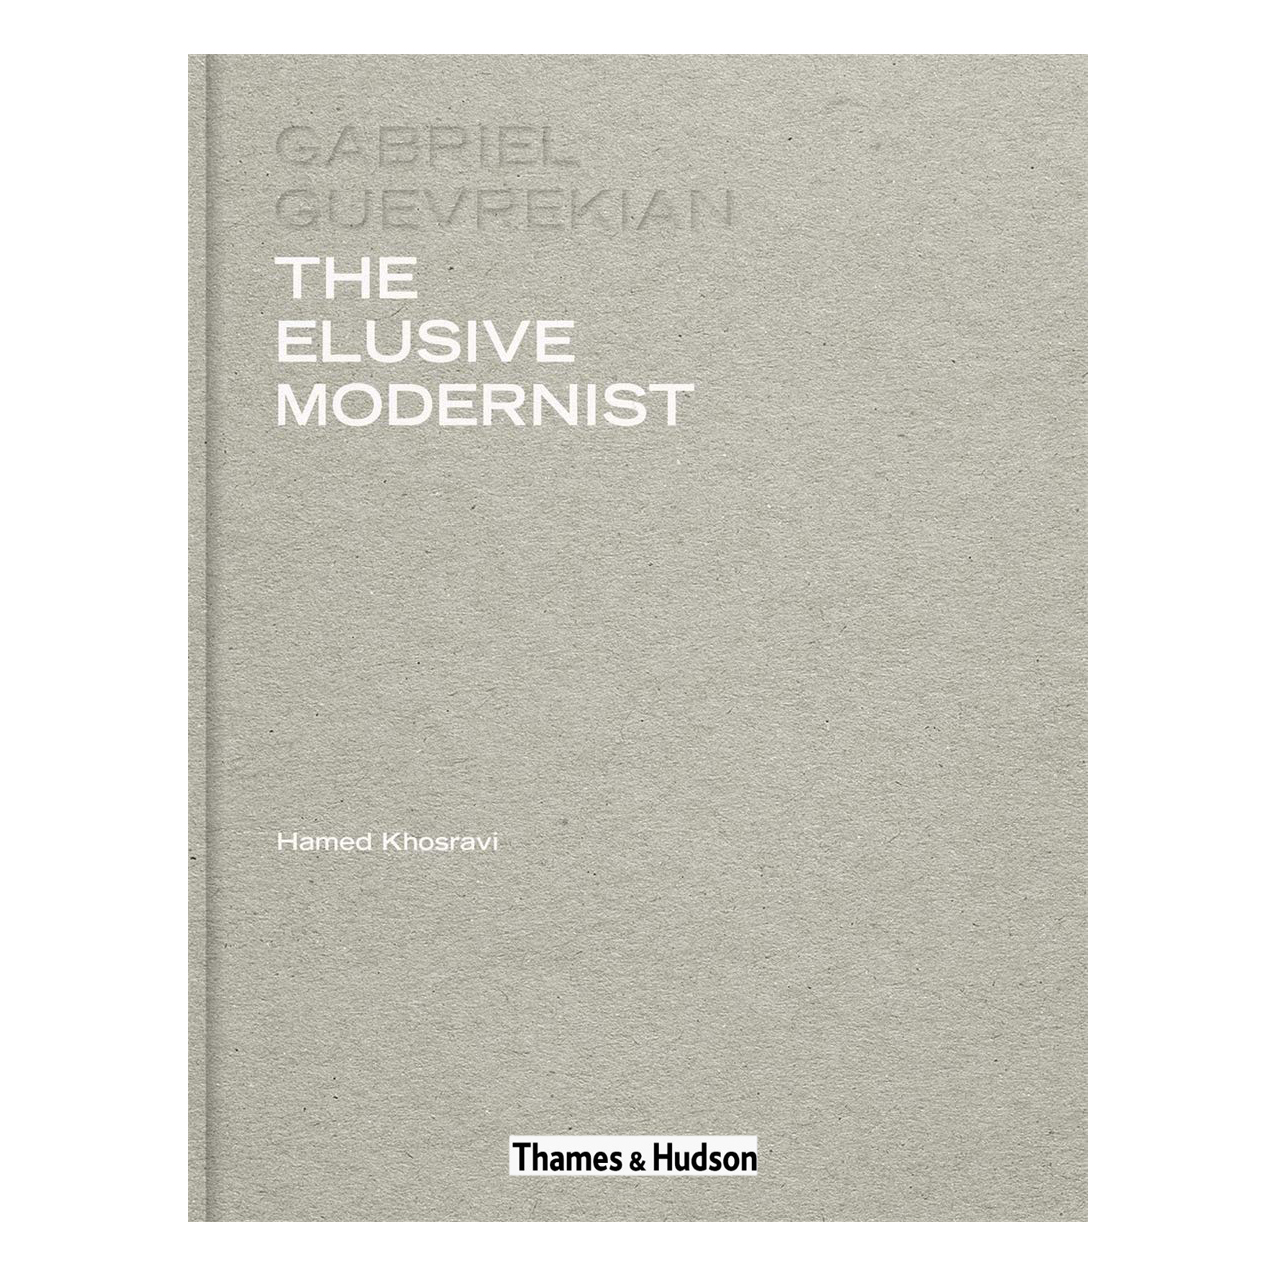 کتاب Gabriel Guevrekian The Elusive Modernist اثر Marco Ugolini انتشارات تیمز و هادسون